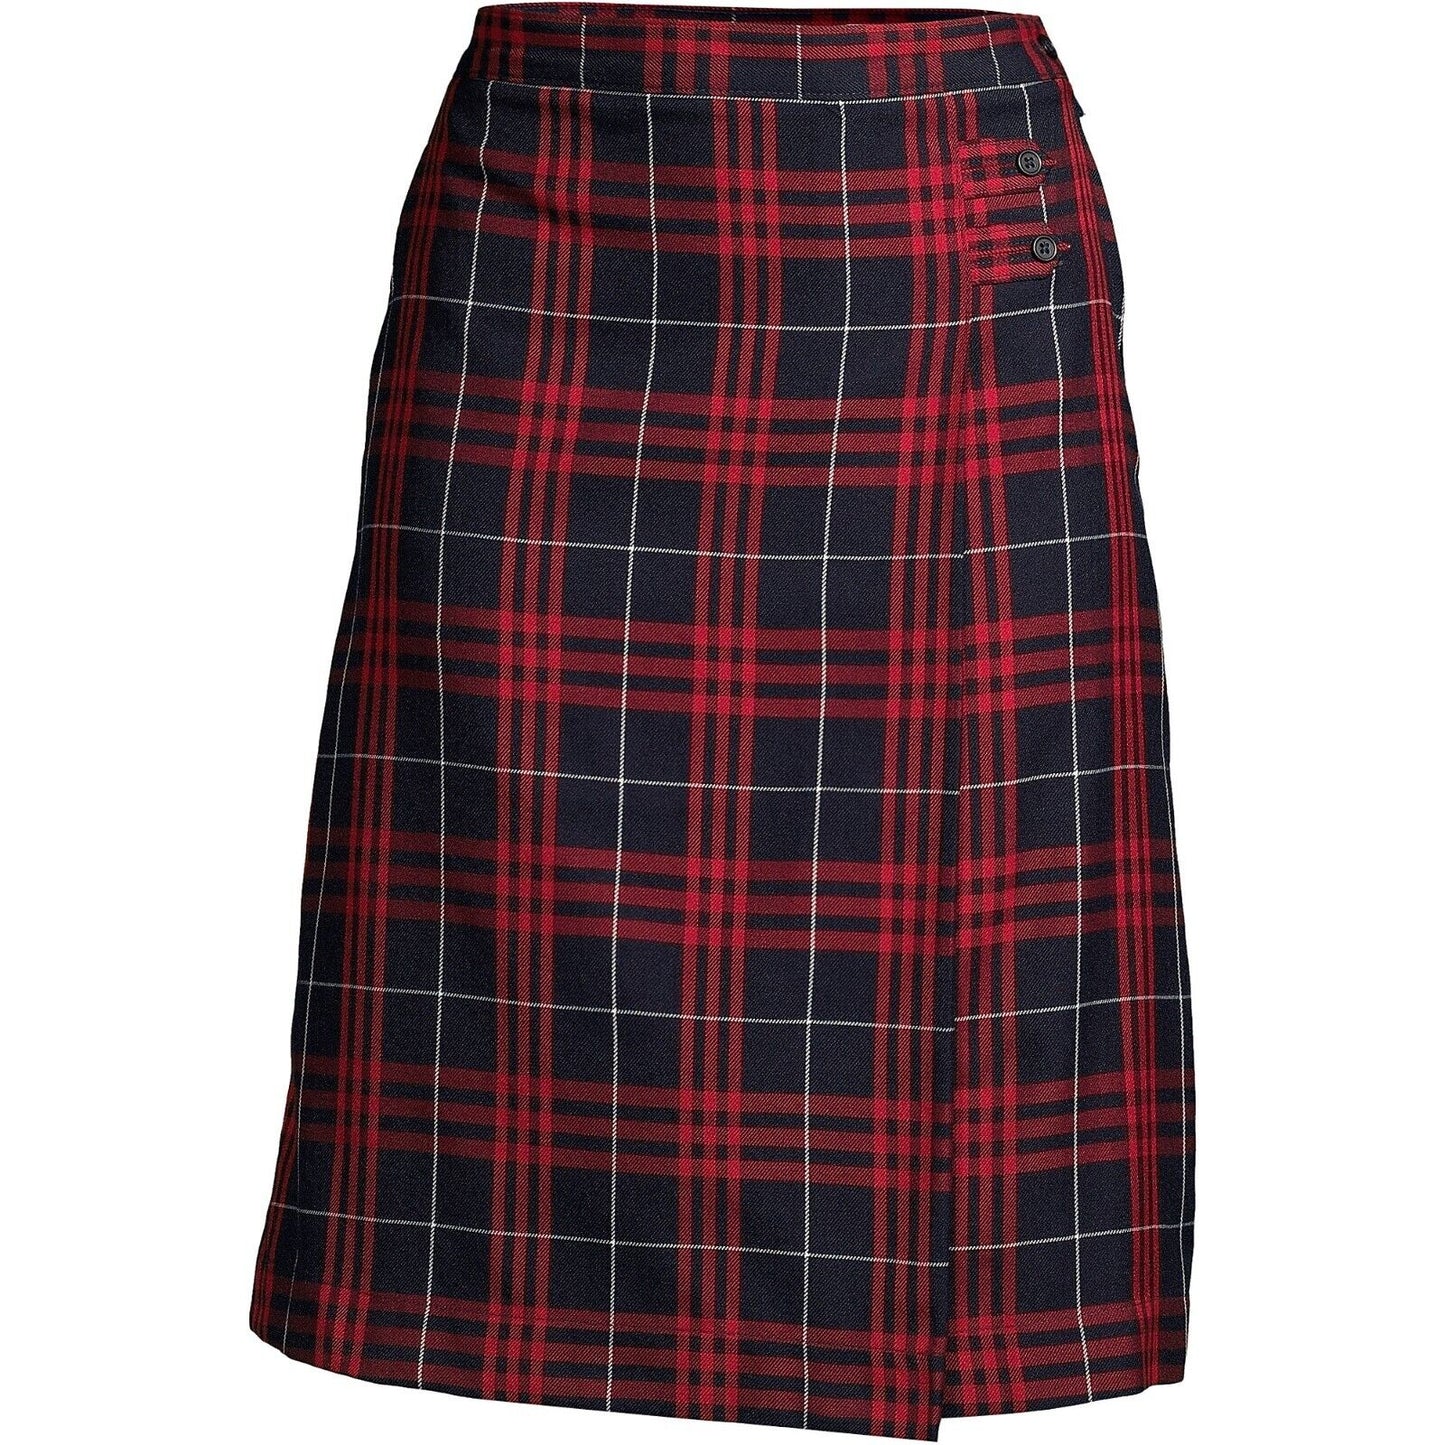 Women's Plaid A-line Skirt Below the Knee 8